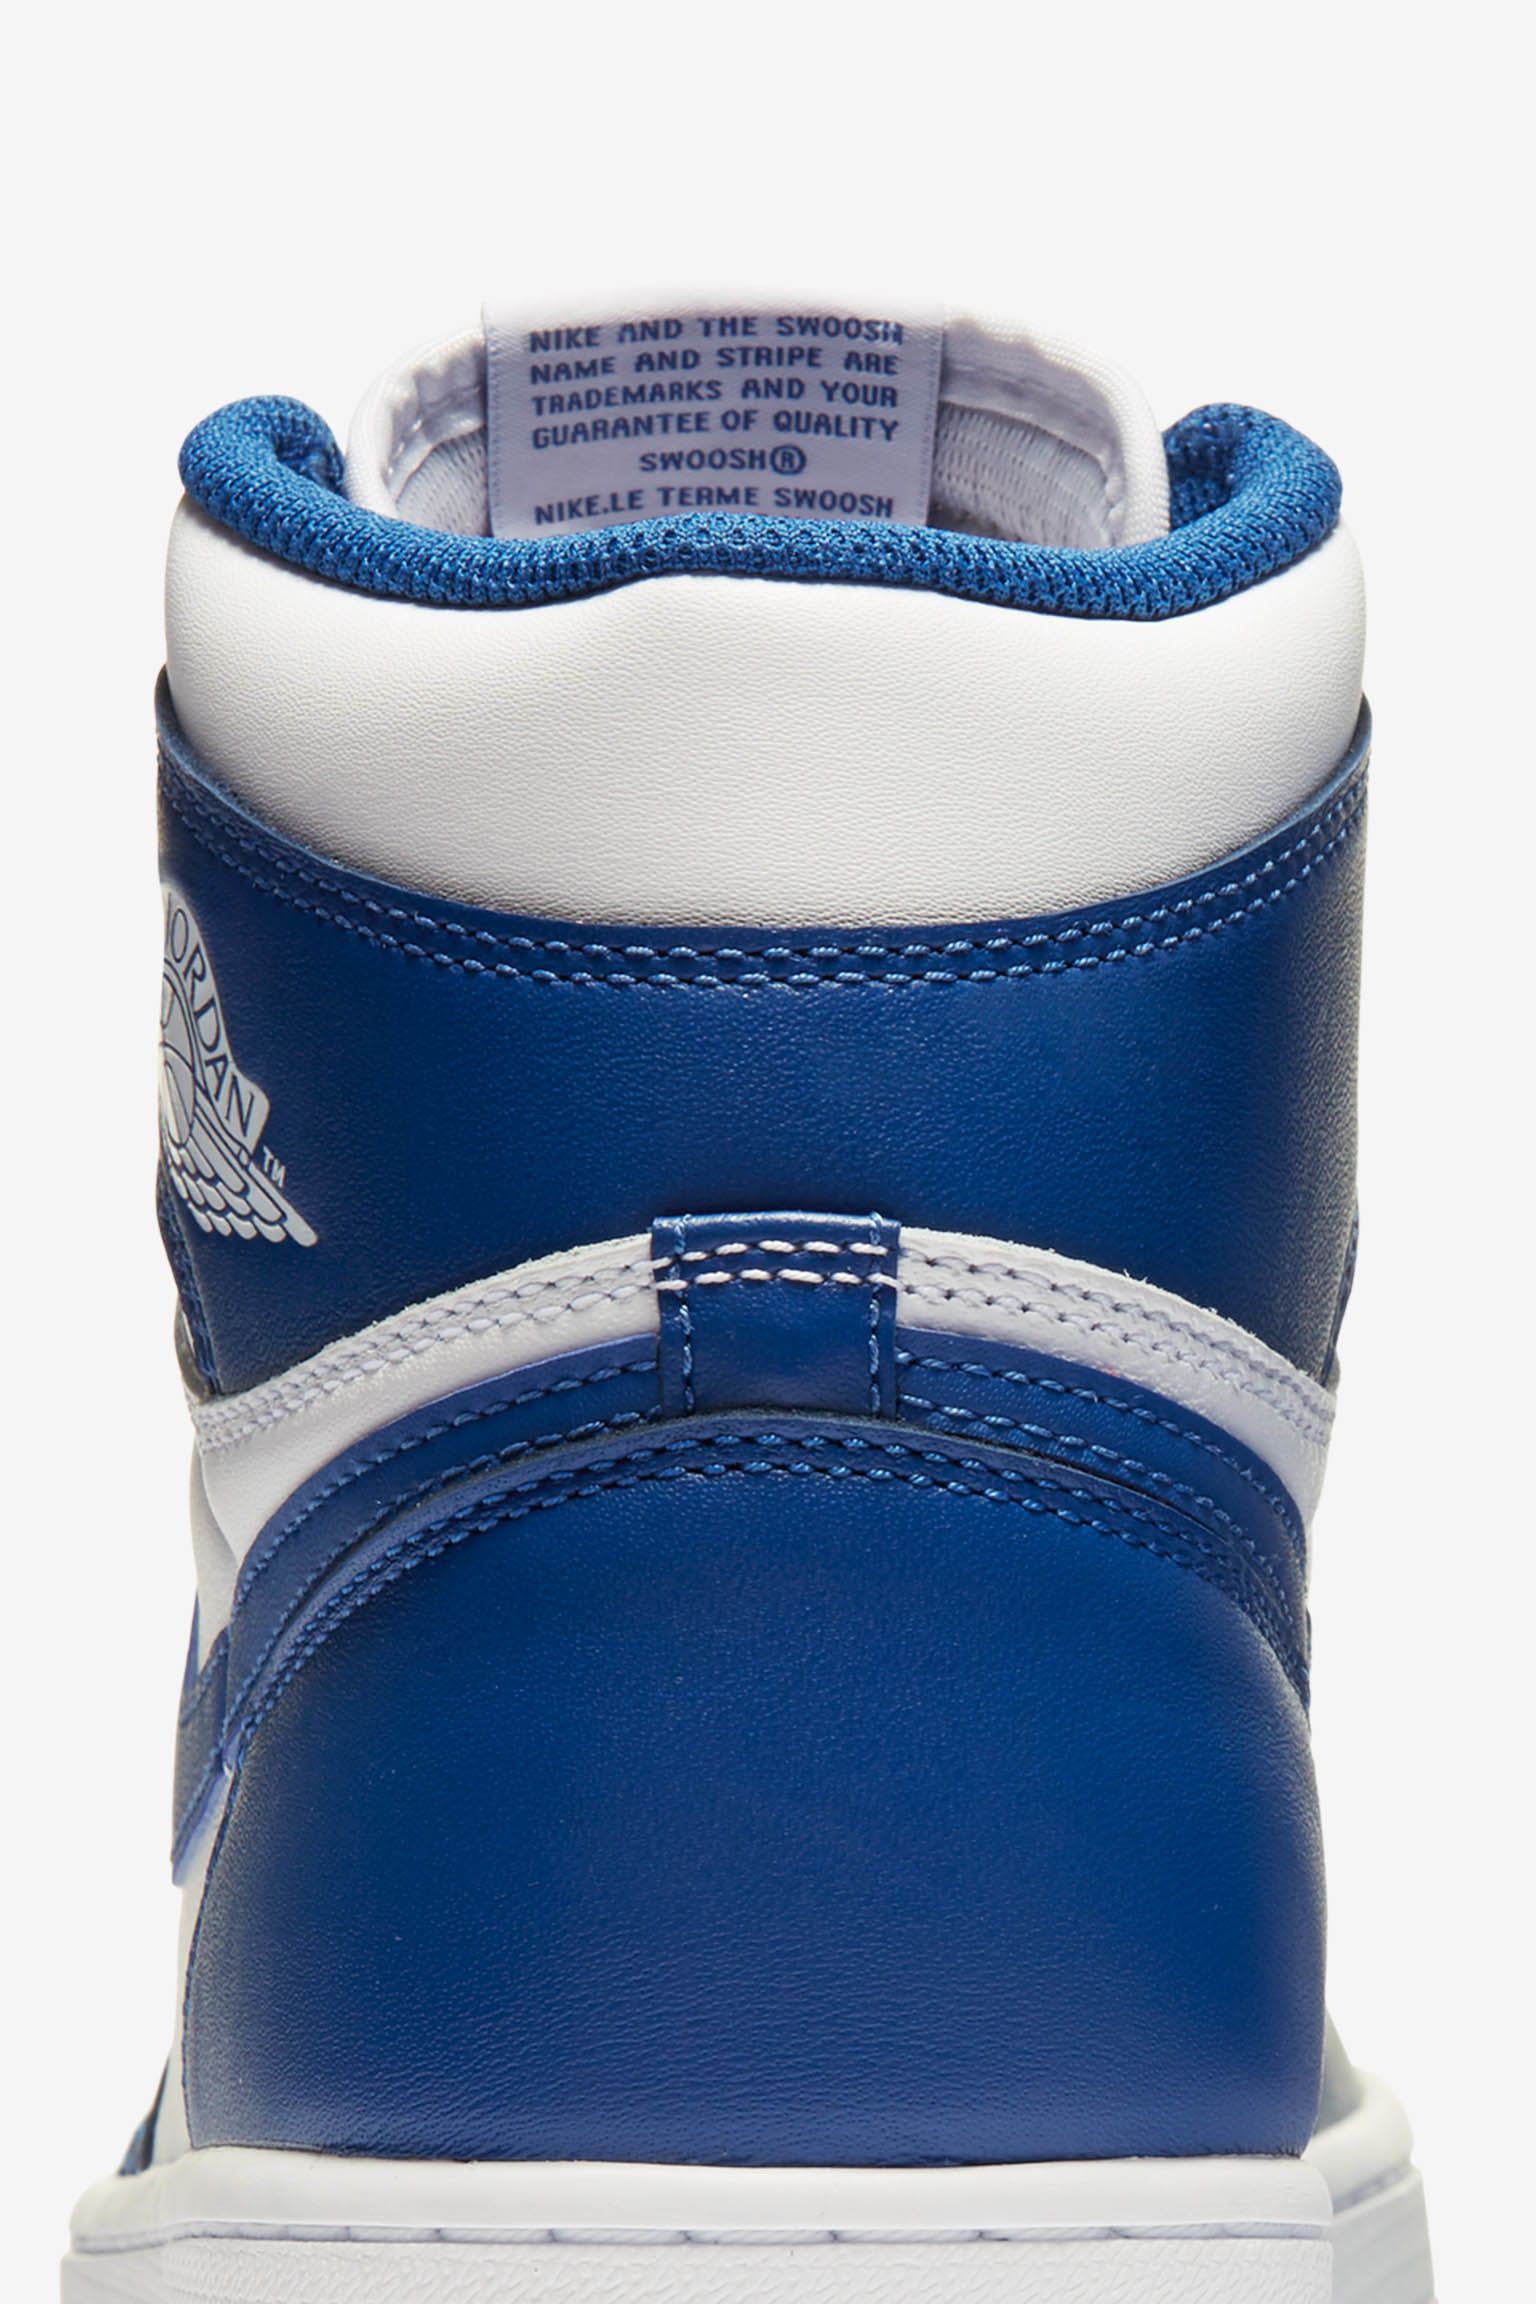 ألعاب نينتندو سويتش Air Jordan 1 Retro 'Storm Blue'. Nike SNKRS ألعاب نينتندو سويتش